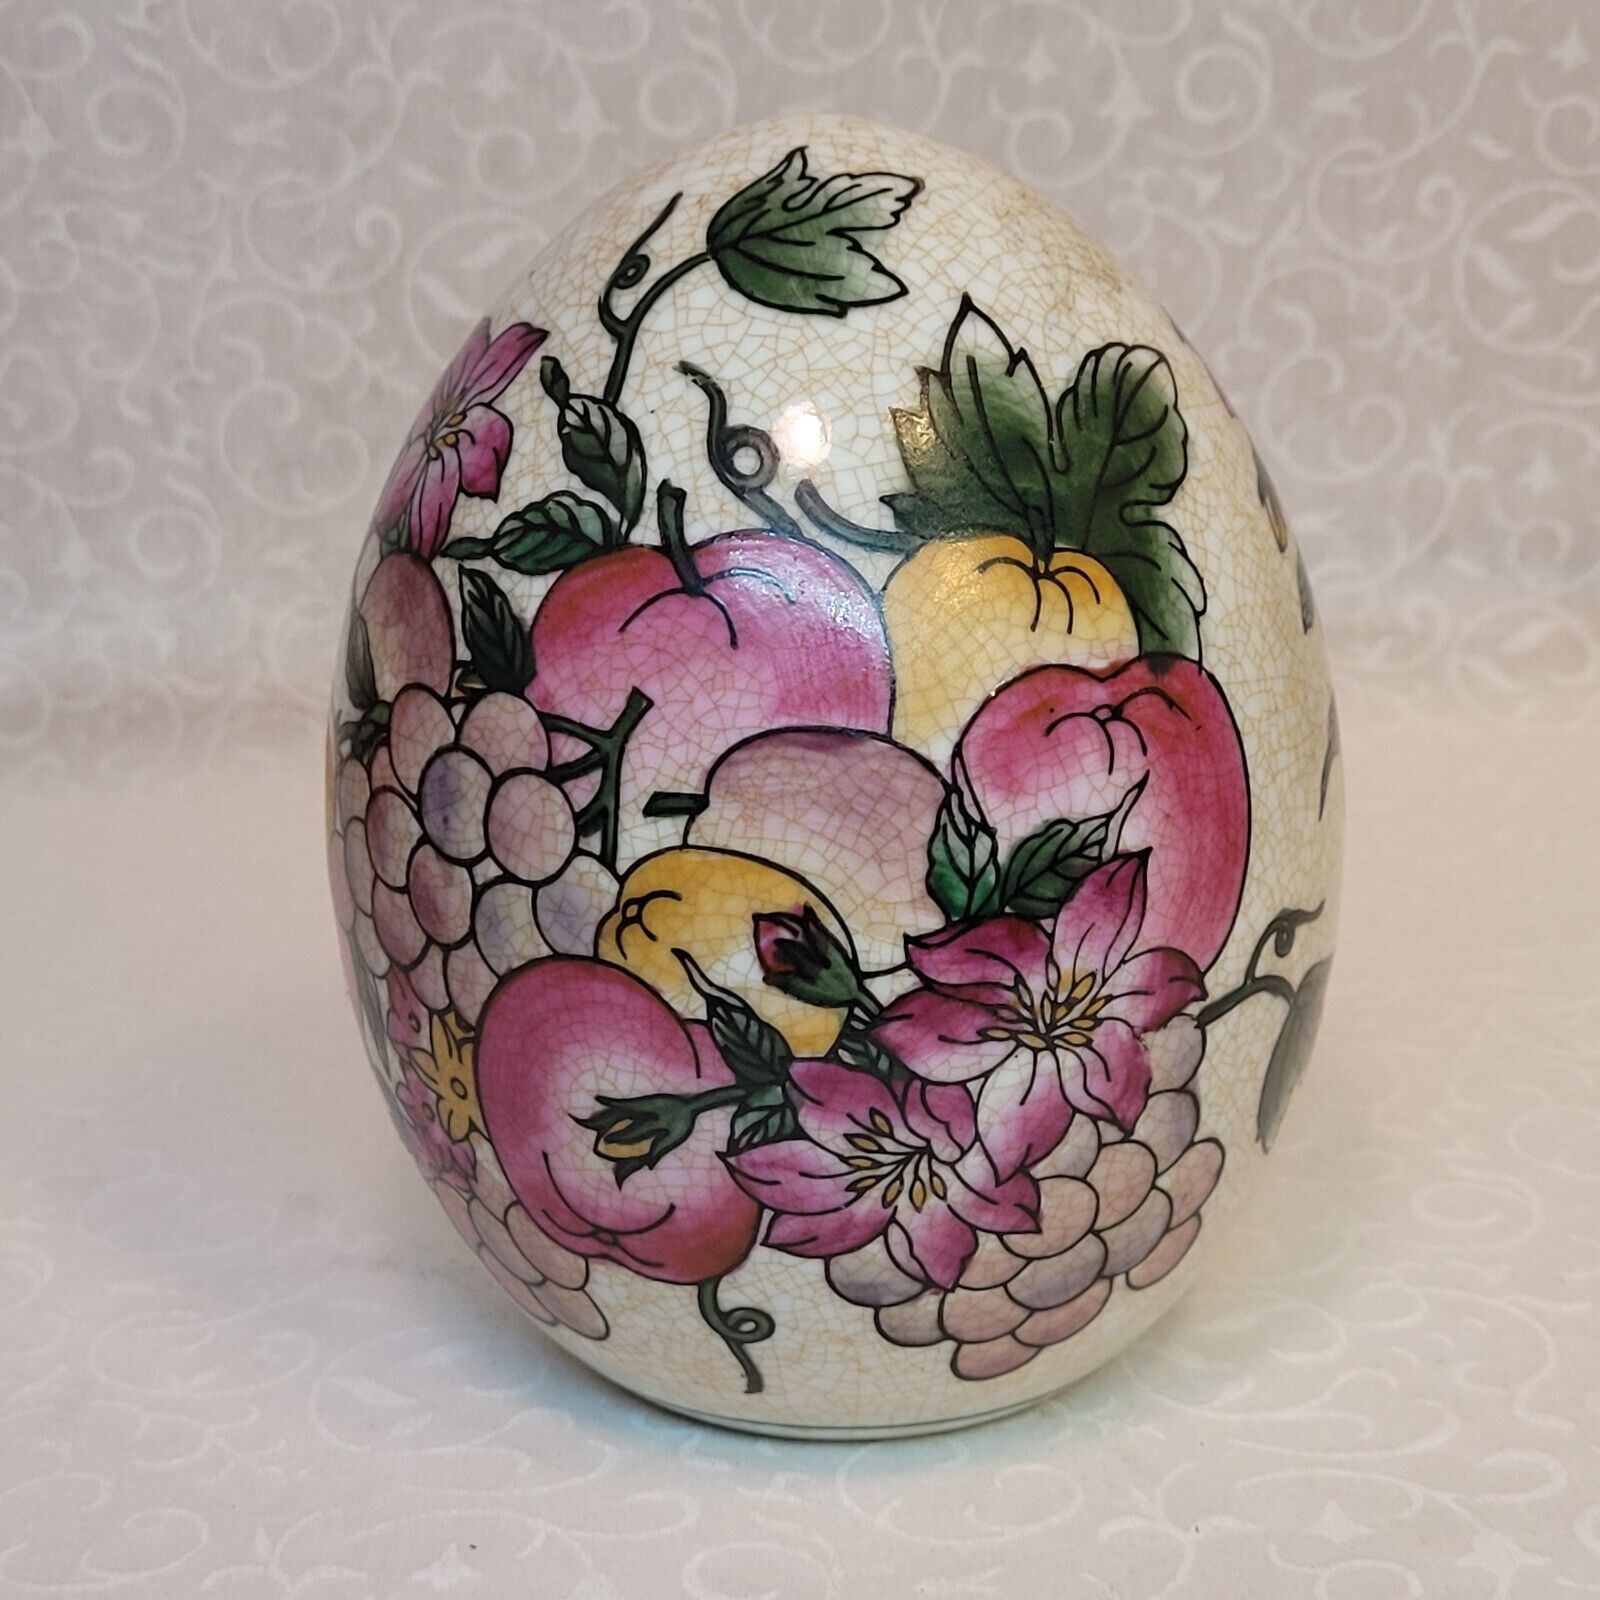 Vintage Large Porcelain Enamel Egg with Floral And Fruit Motif Design 6\